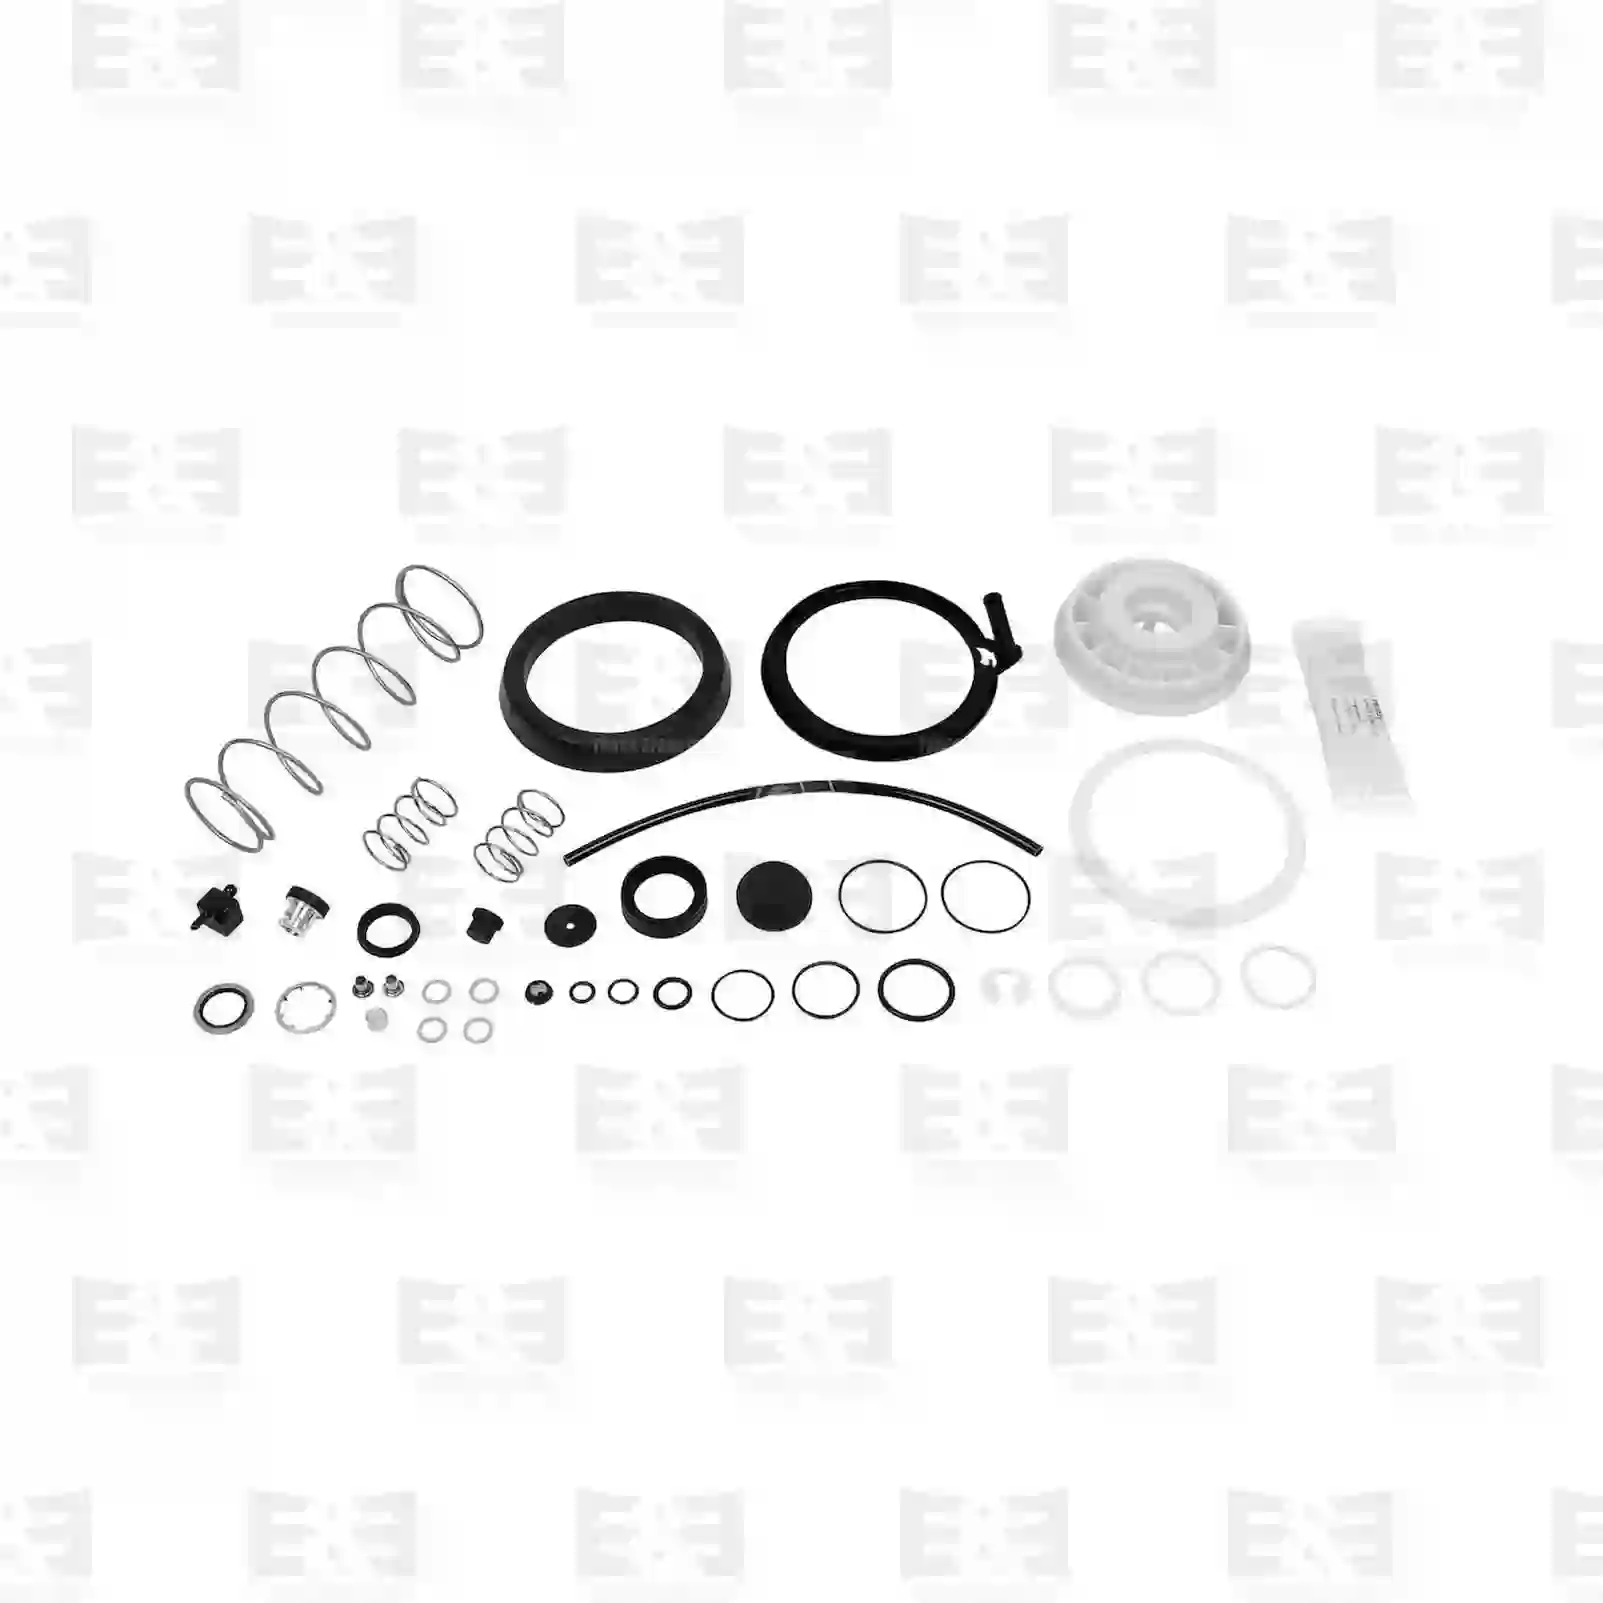 Repair kit, clutch servo, 2E2288303, 1519288, 08124872, 503135386, 8124872, 0002950660, 5000814928, 5021170438, 360725, 550424, 550436, 550457 ||  2E2288303 E&E Truck Spare Parts | Truck Spare Parts, Auotomotive Spare Parts Repair kit, clutch servo, 2E2288303, 1519288, 08124872, 503135386, 8124872, 0002950660, 5000814928, 5021170438, 360725, 550424, 550436, 550457 ||  2E2288303 E&E Truck Spare Parts | Truck Spare Parts, Auotomotive Spare Parts